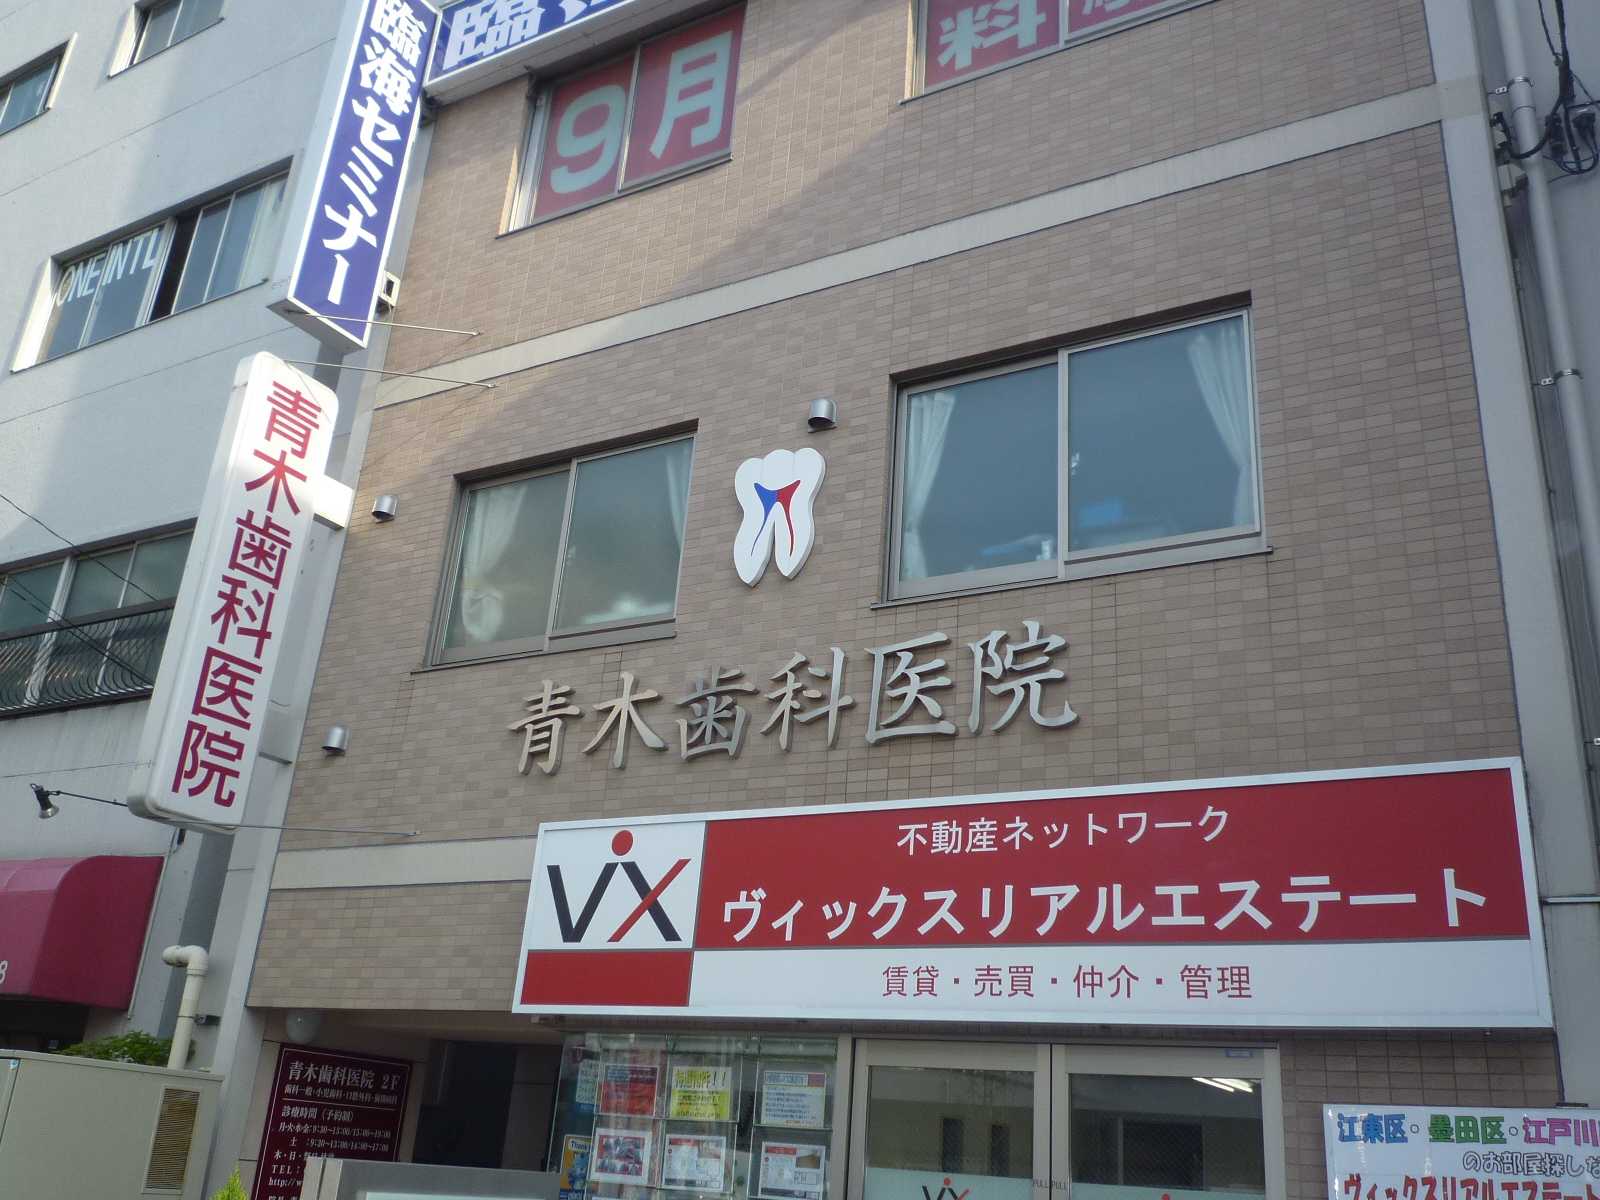 Hospital. Aoki 100m to dental (hospital)